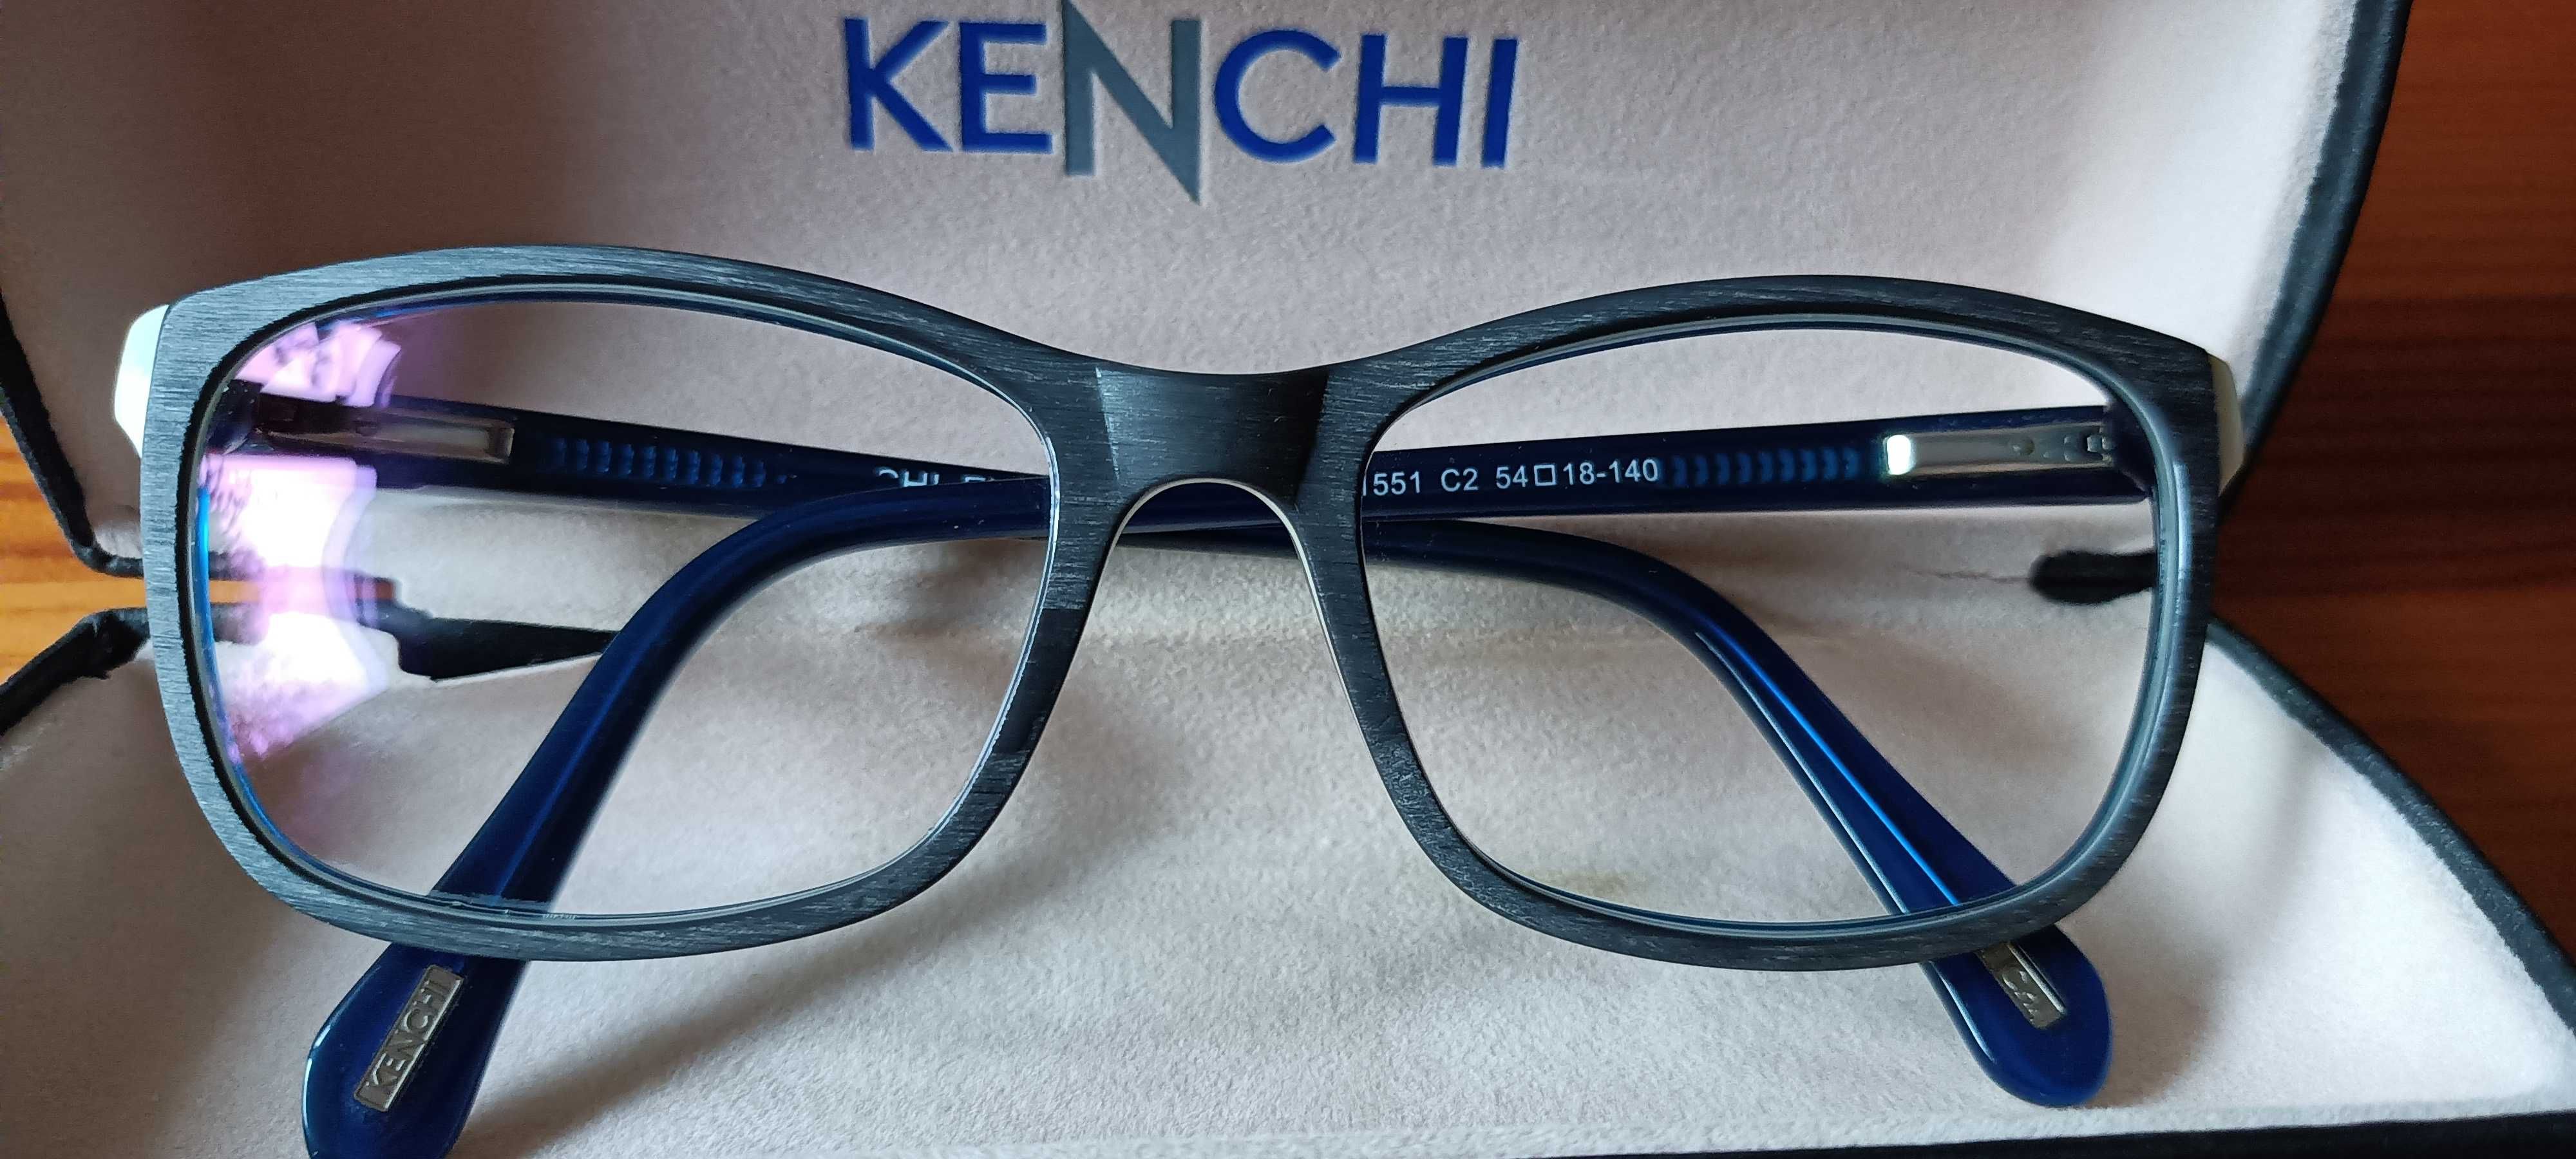 Oprawki do okularów, imitacja drewna, Kenchi.